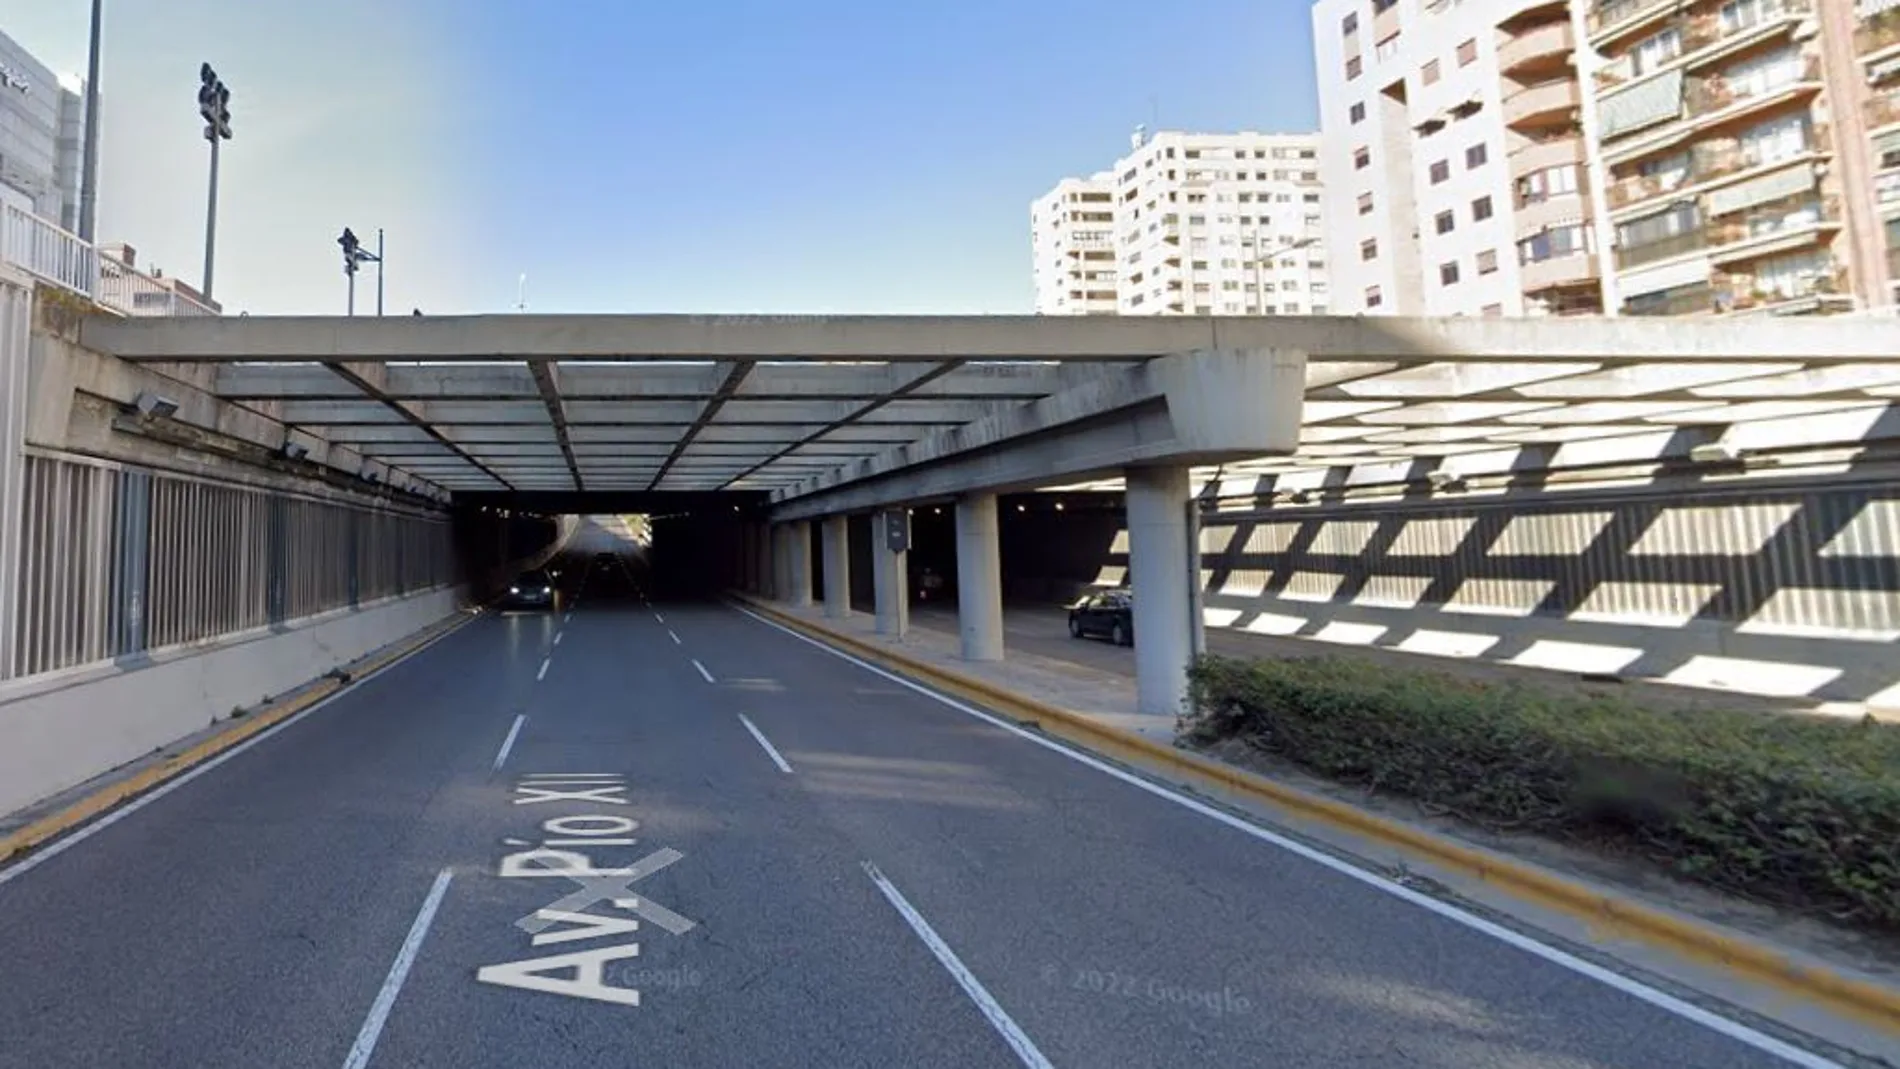 El túnel de la avenida Pío XII de Valencia es donde más multan se ponen en la ciudad 